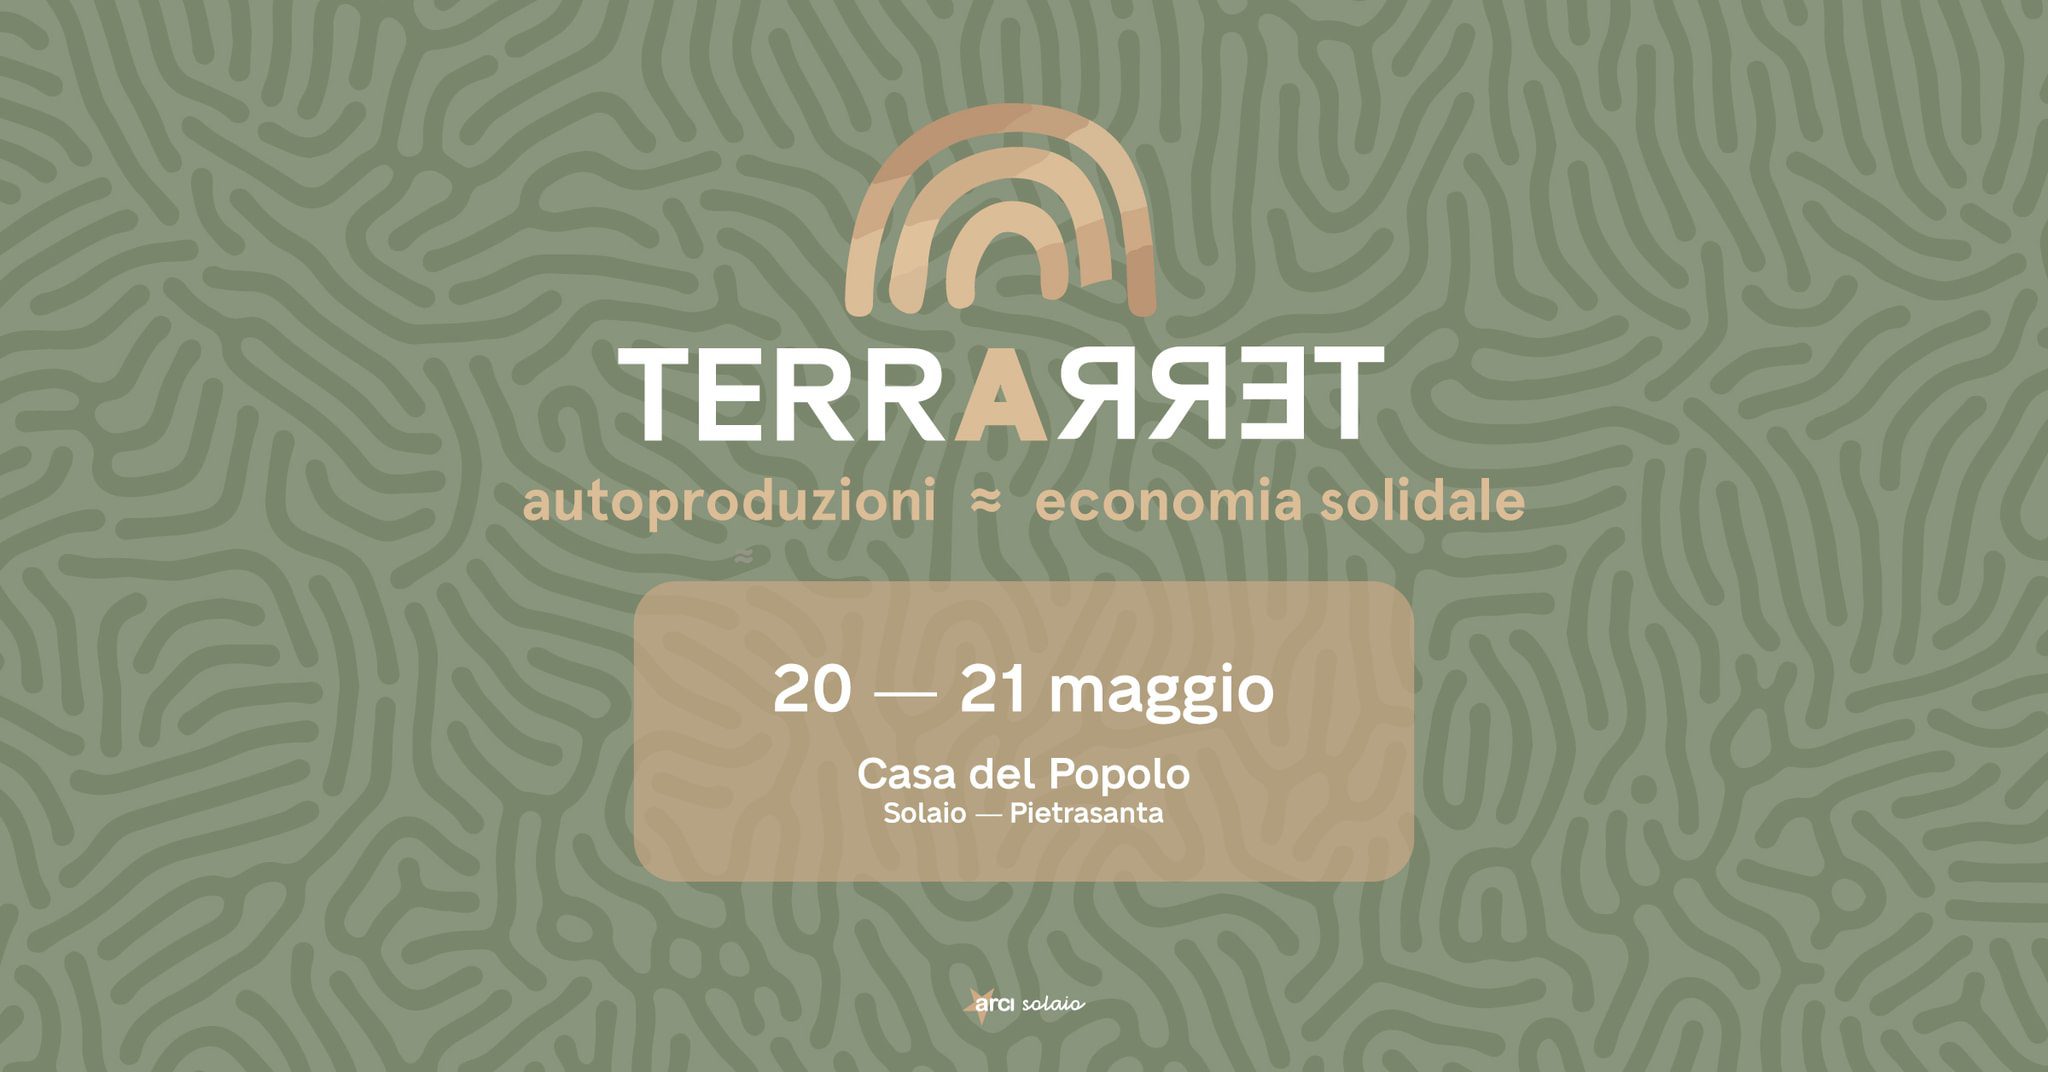 TerraTerra – Autoproduzione, mutualismo ed economia solidale a Solaio (LU)